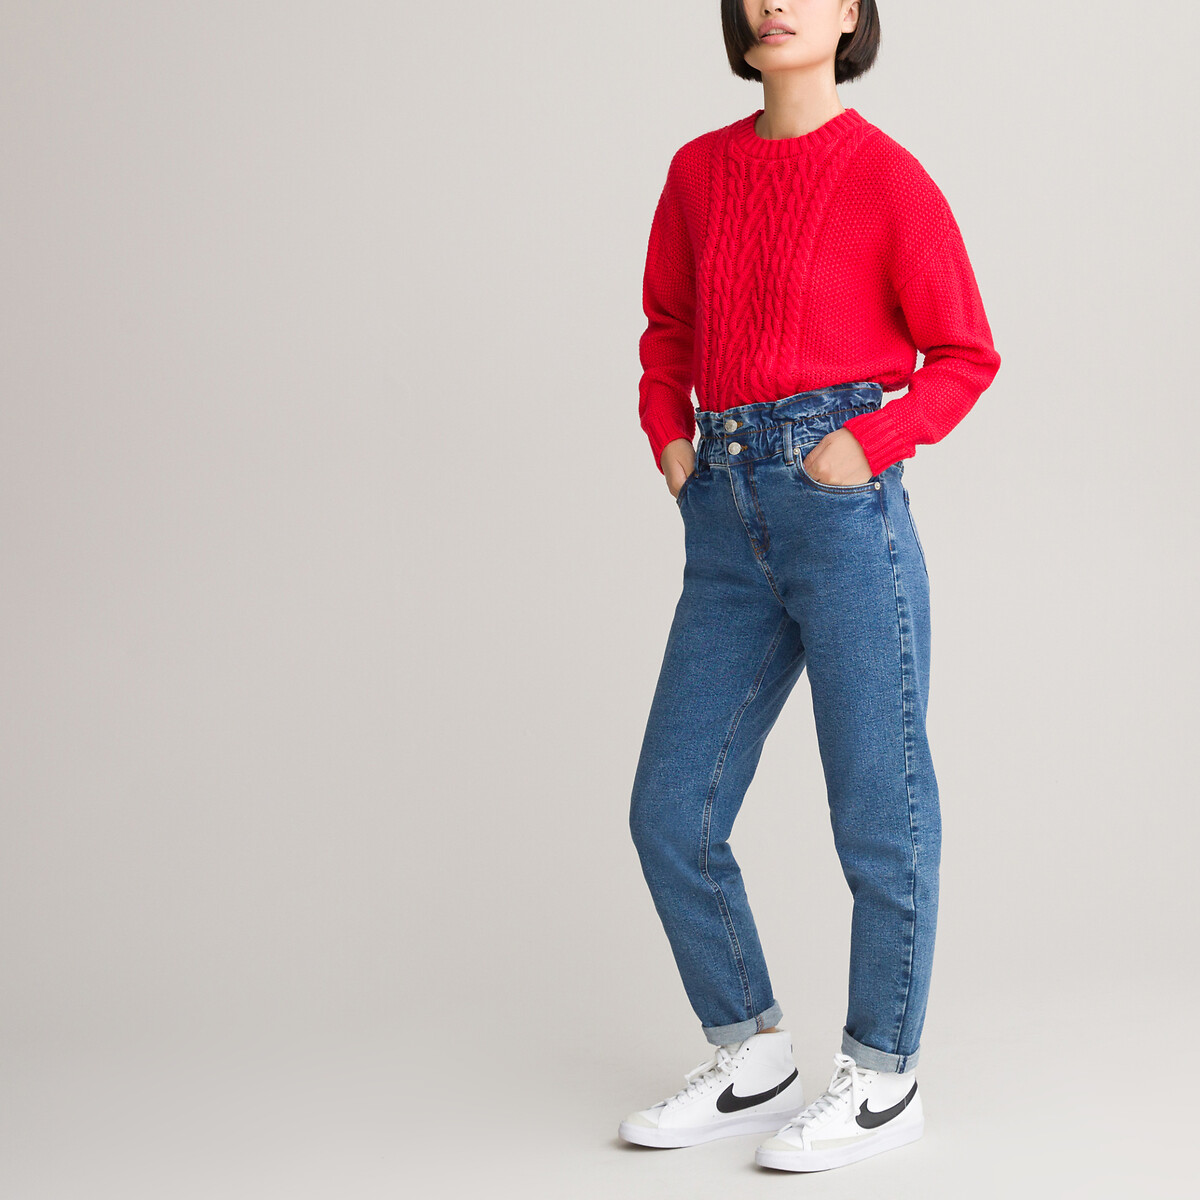 Пуловер LaRedoute С круглым вырезом из плотного трикотажа 10-18 лет 12 лет -150 см красный, размер 12 лет -150 см - фото 2